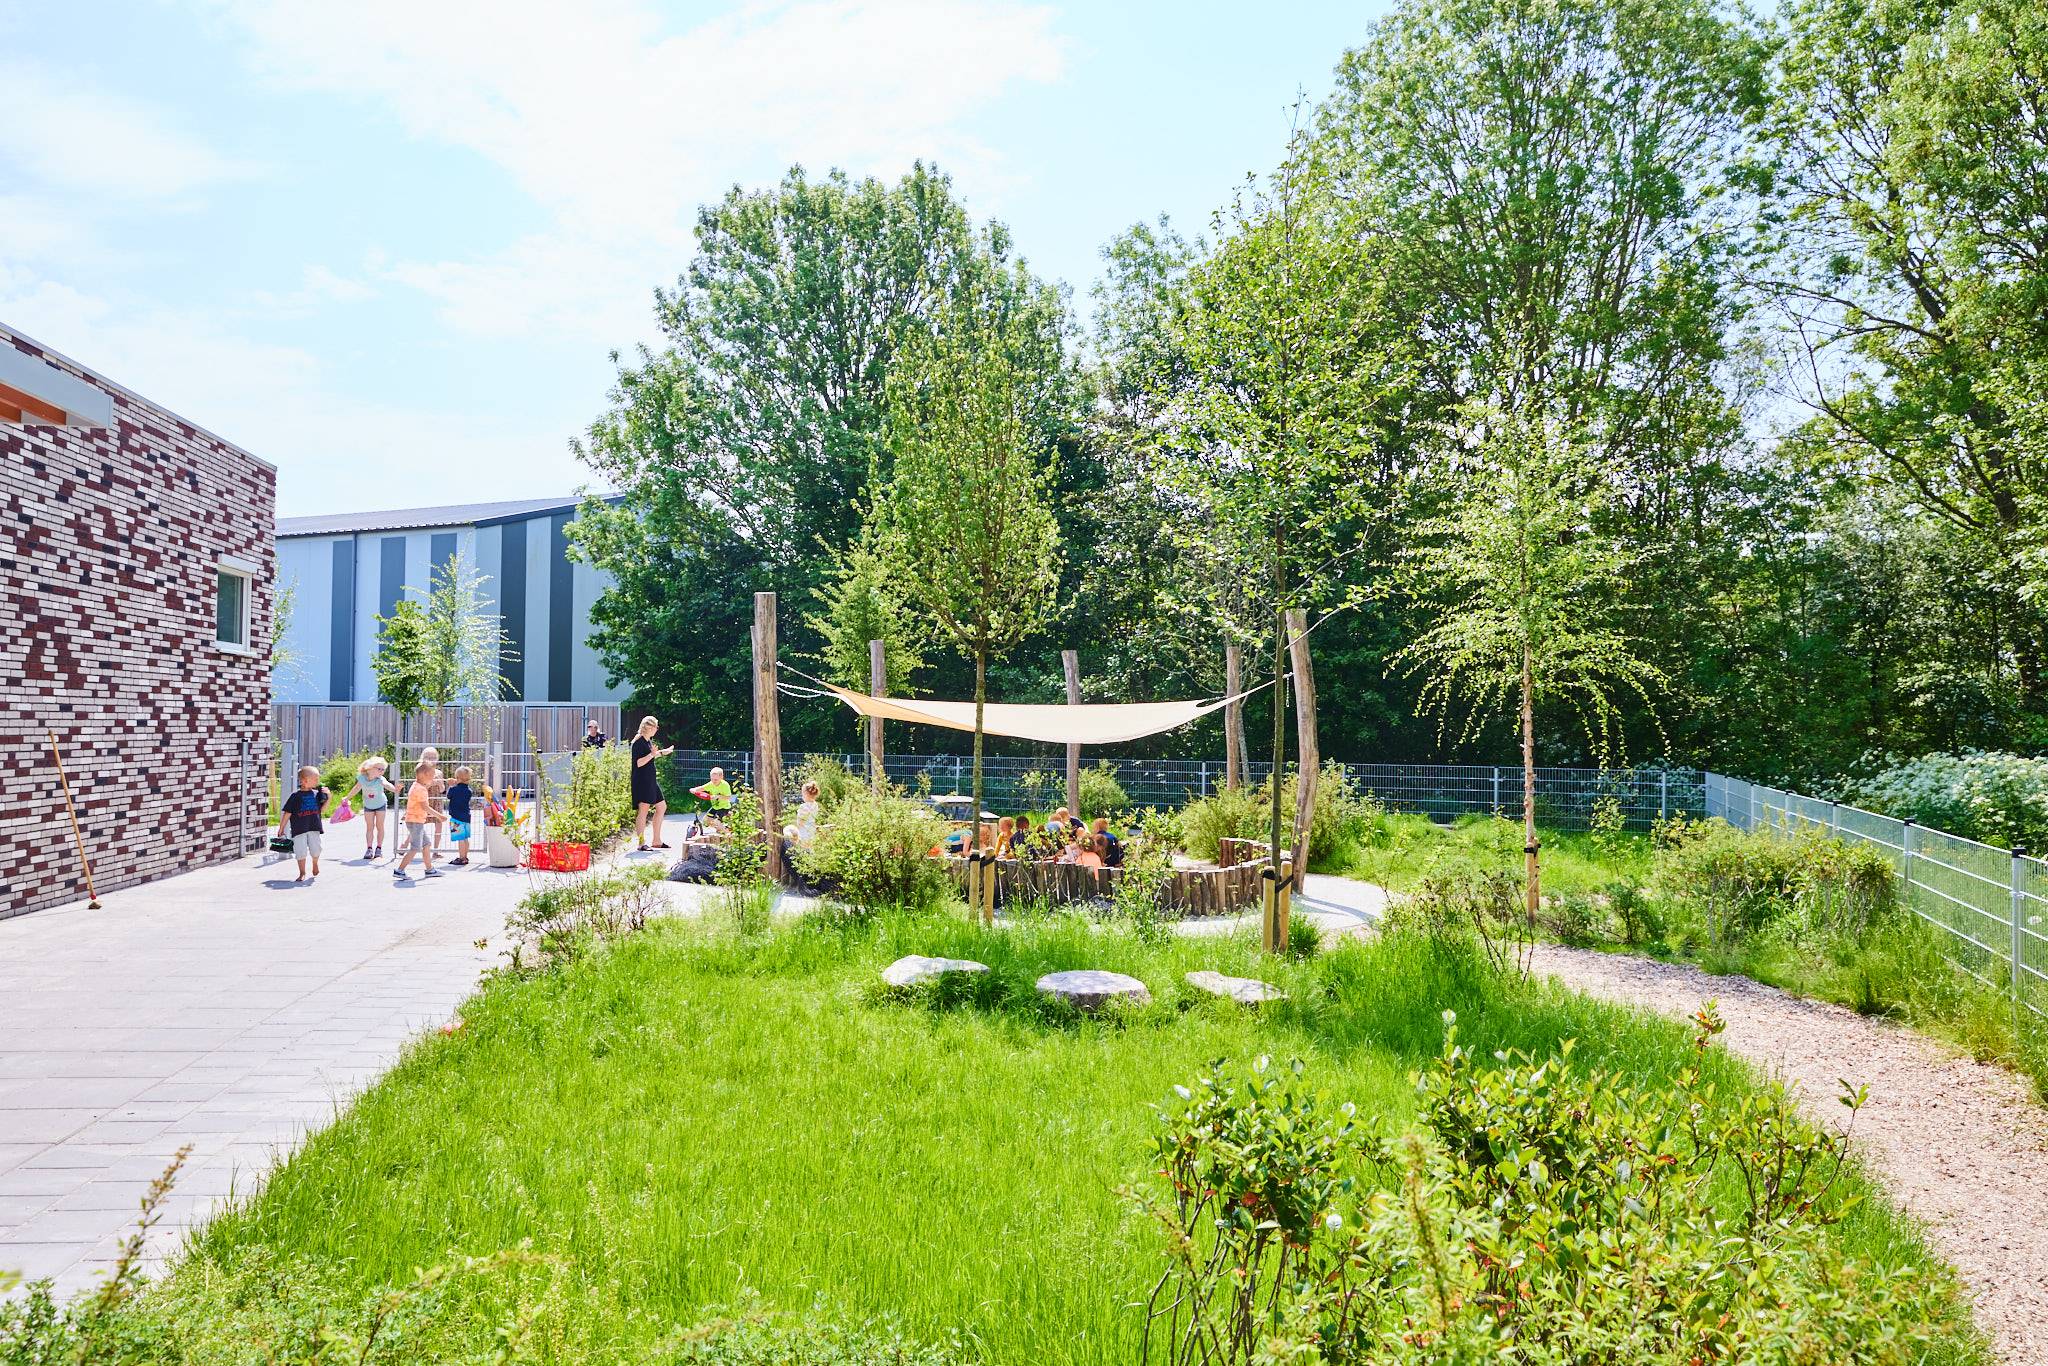 Het ontwerp van dit groene schoolplein is volledig duurzaam